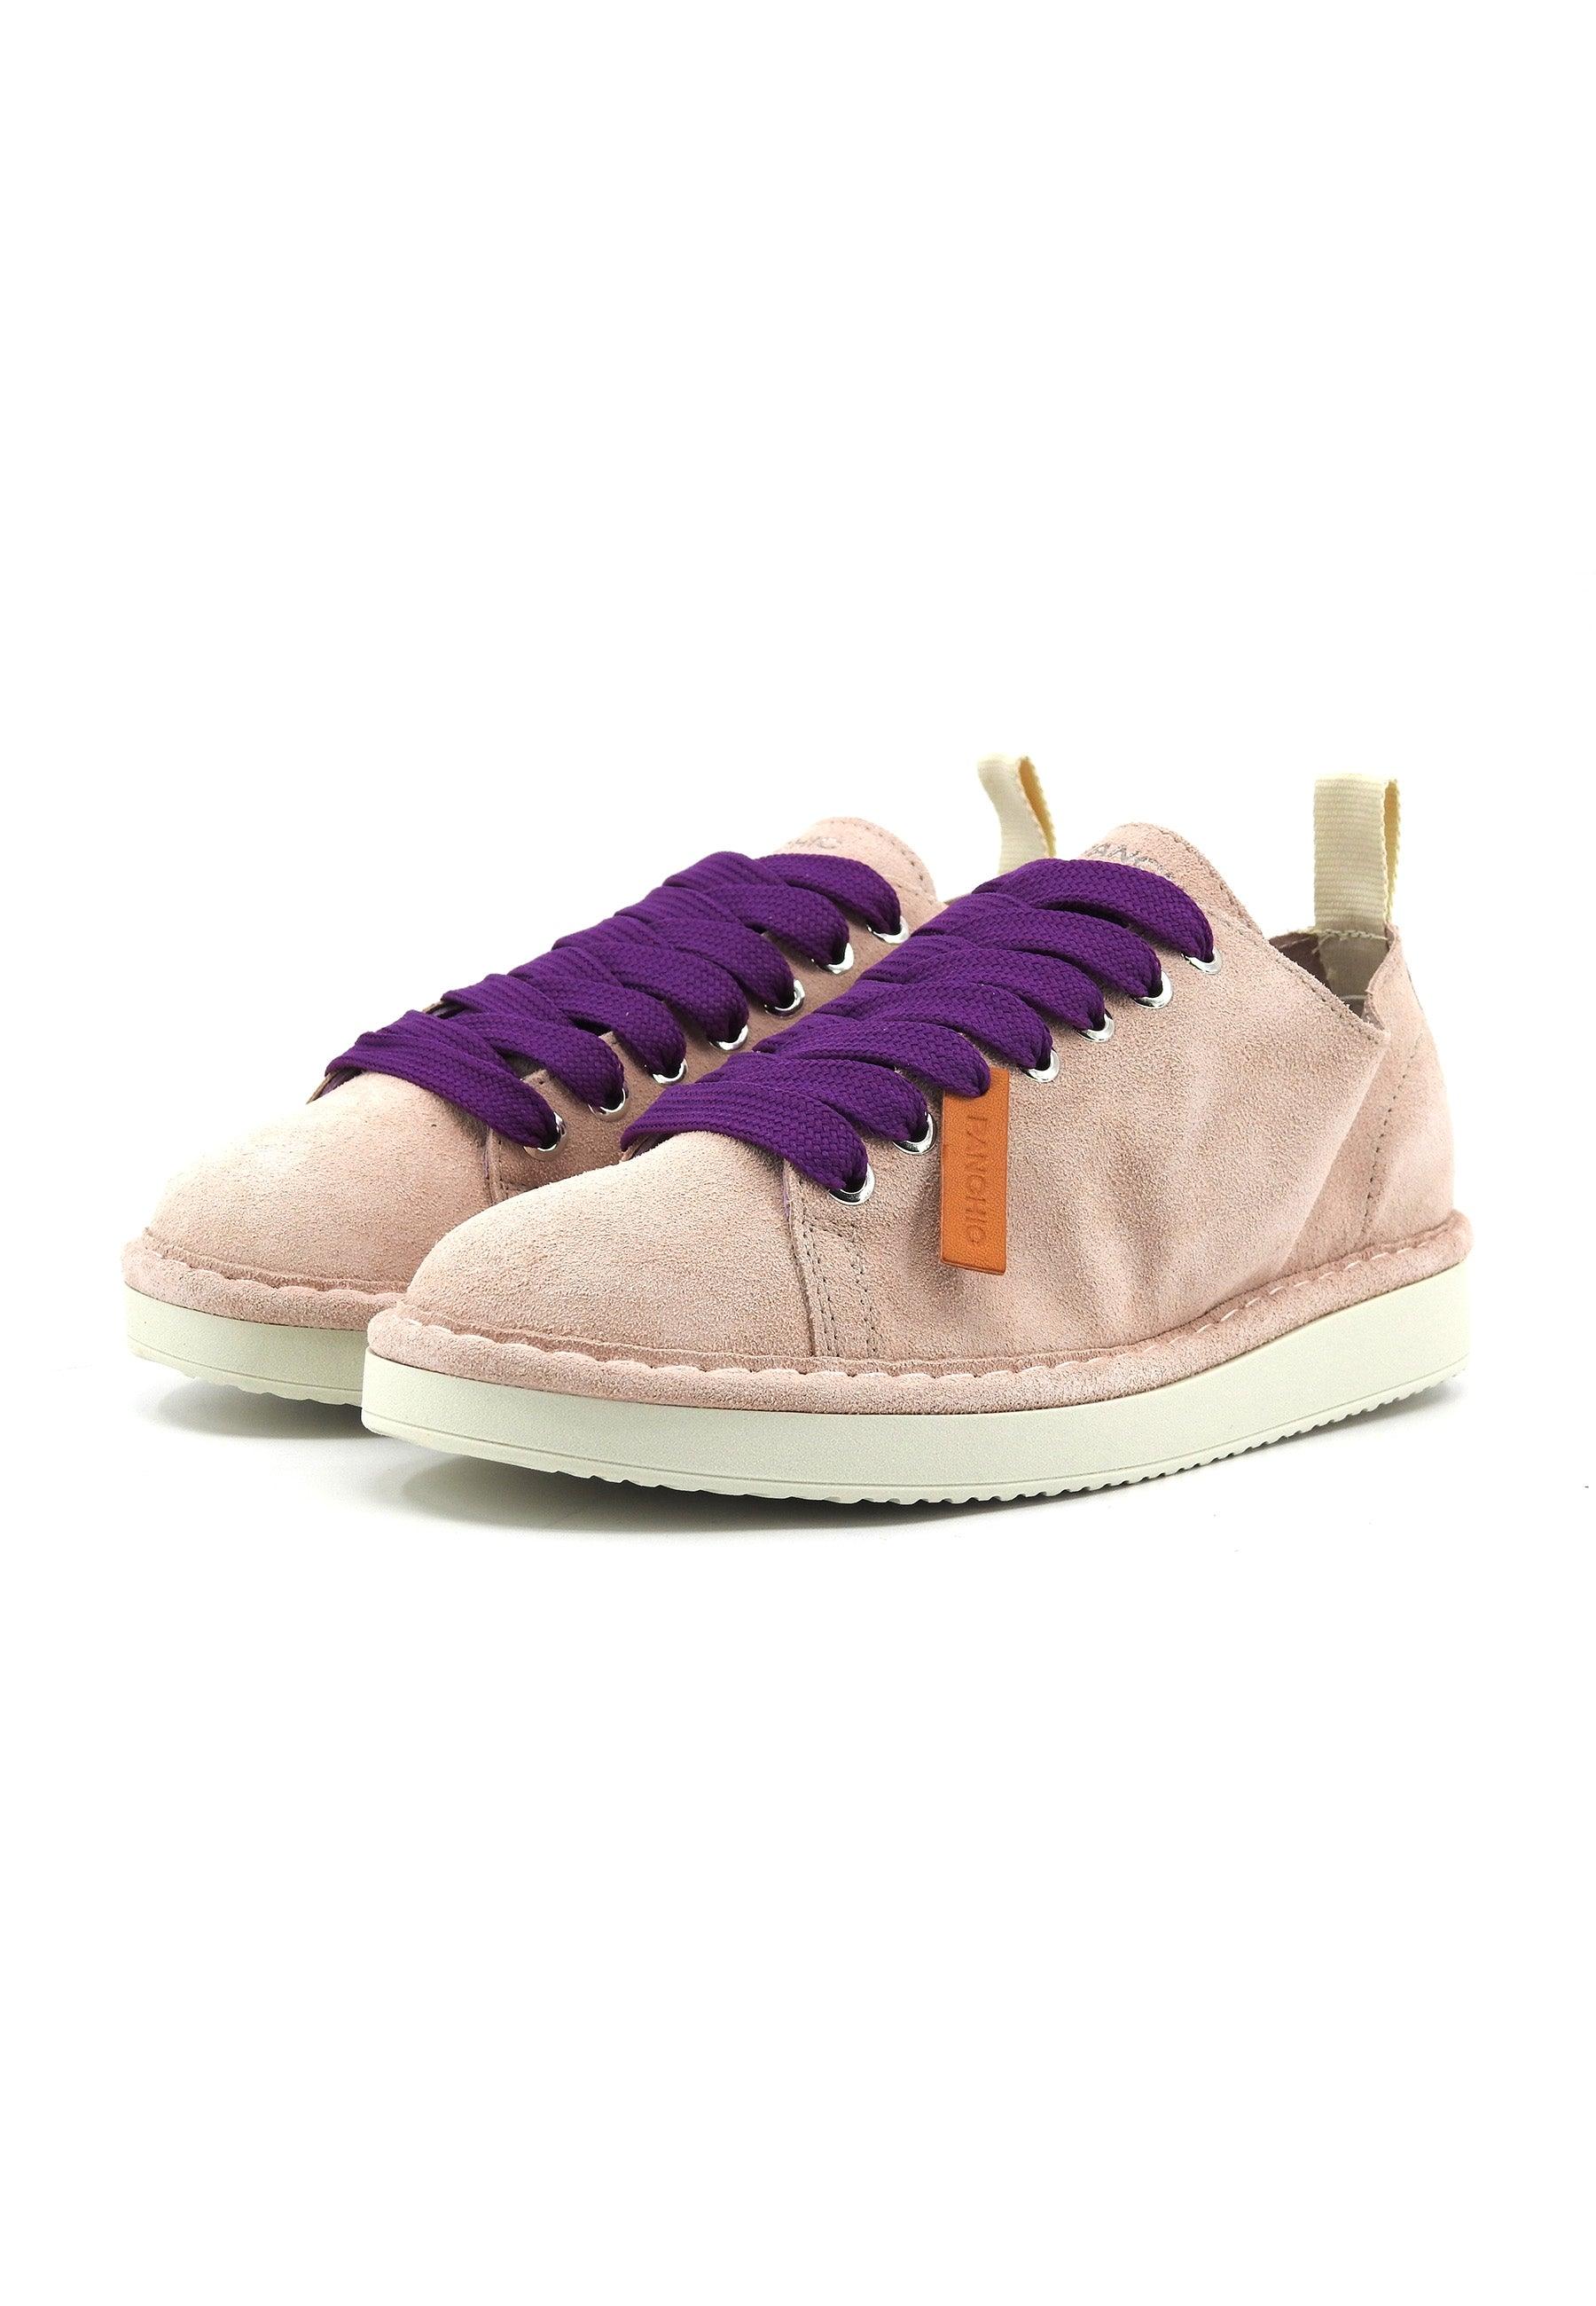 PANCHIC Sneaker Donna Powder Pink Pansy P01W011-00552111 - Sandrini Calzature e Abbigliamento